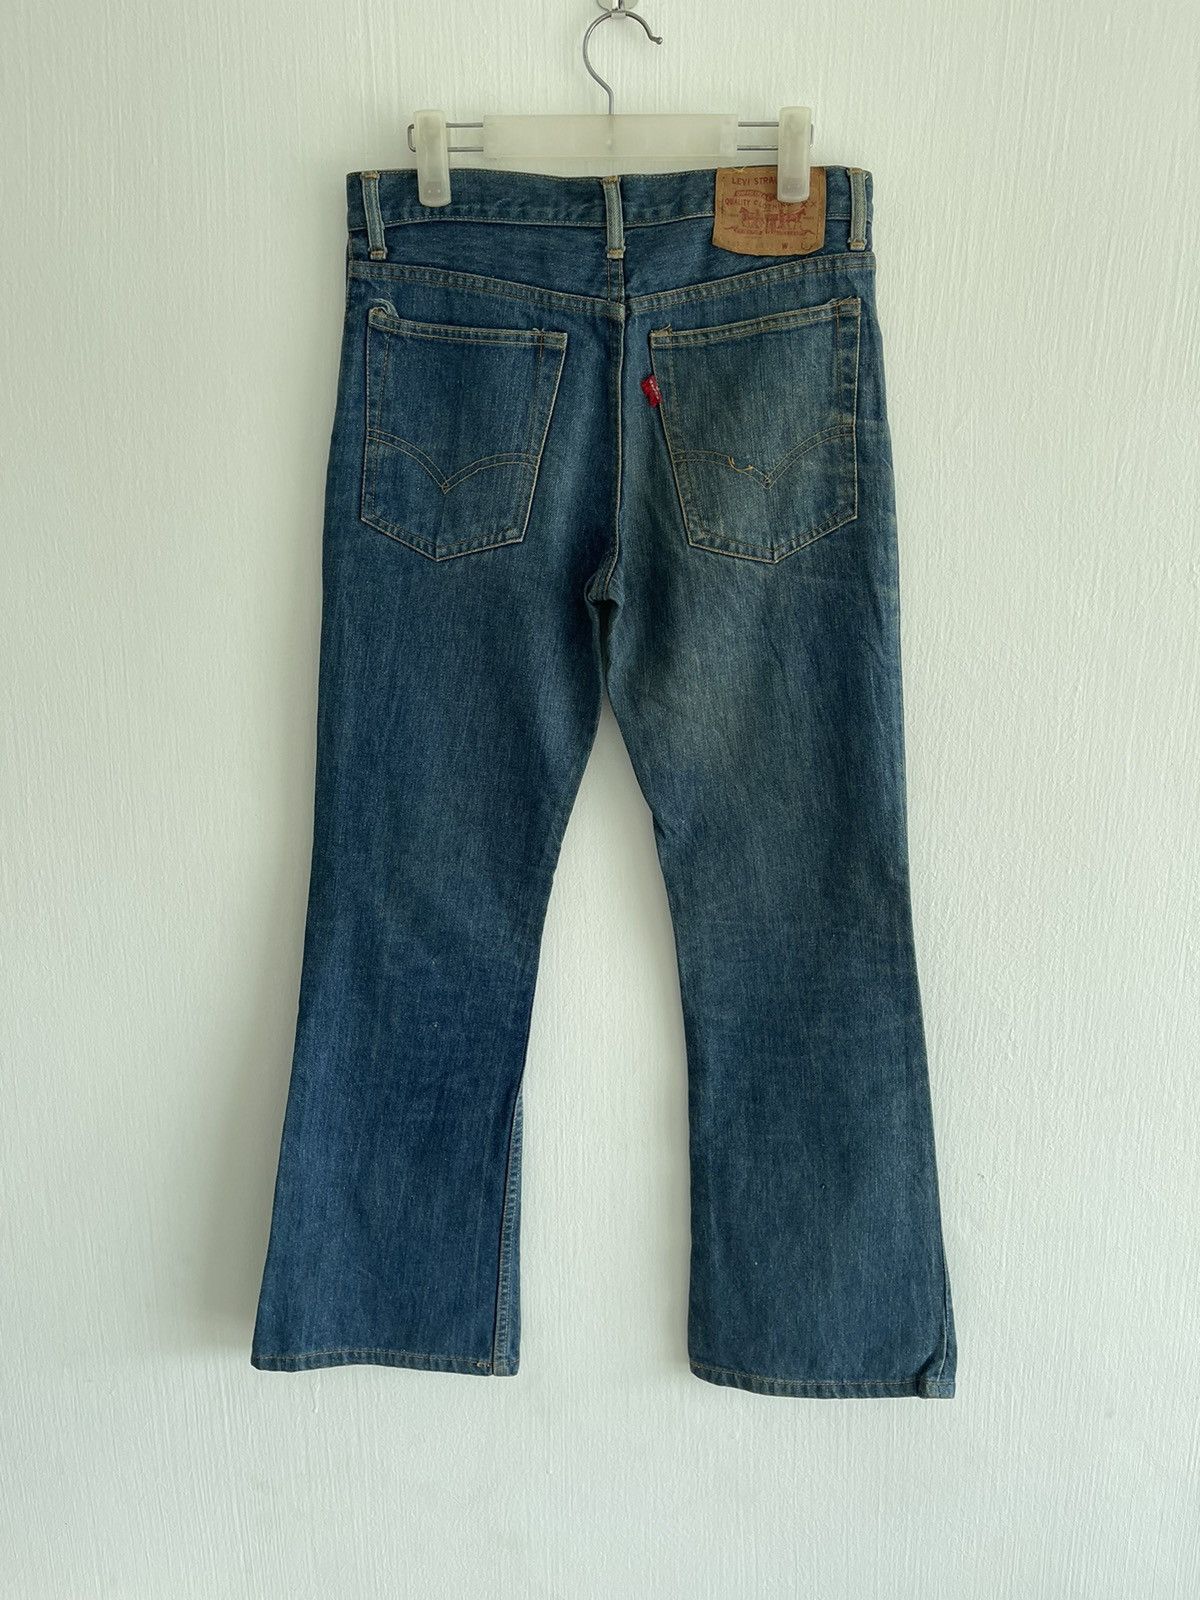 Vintage 70s Levis 507-0217 flare jeans - 2